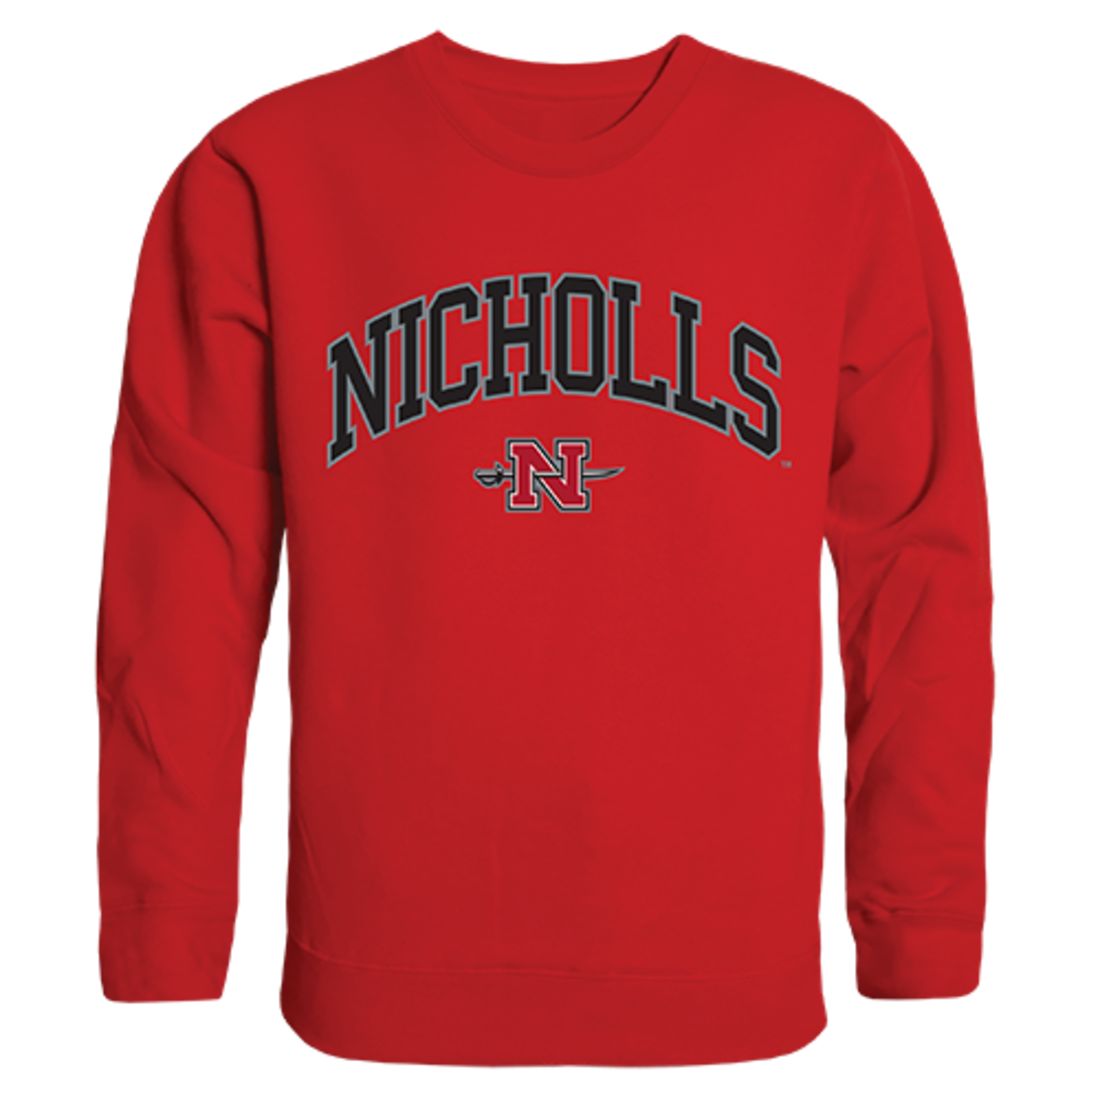 Nicholls State University Campus Crewneck Pullover Sweatshirt Sweater Red-Campus-Wardrobe